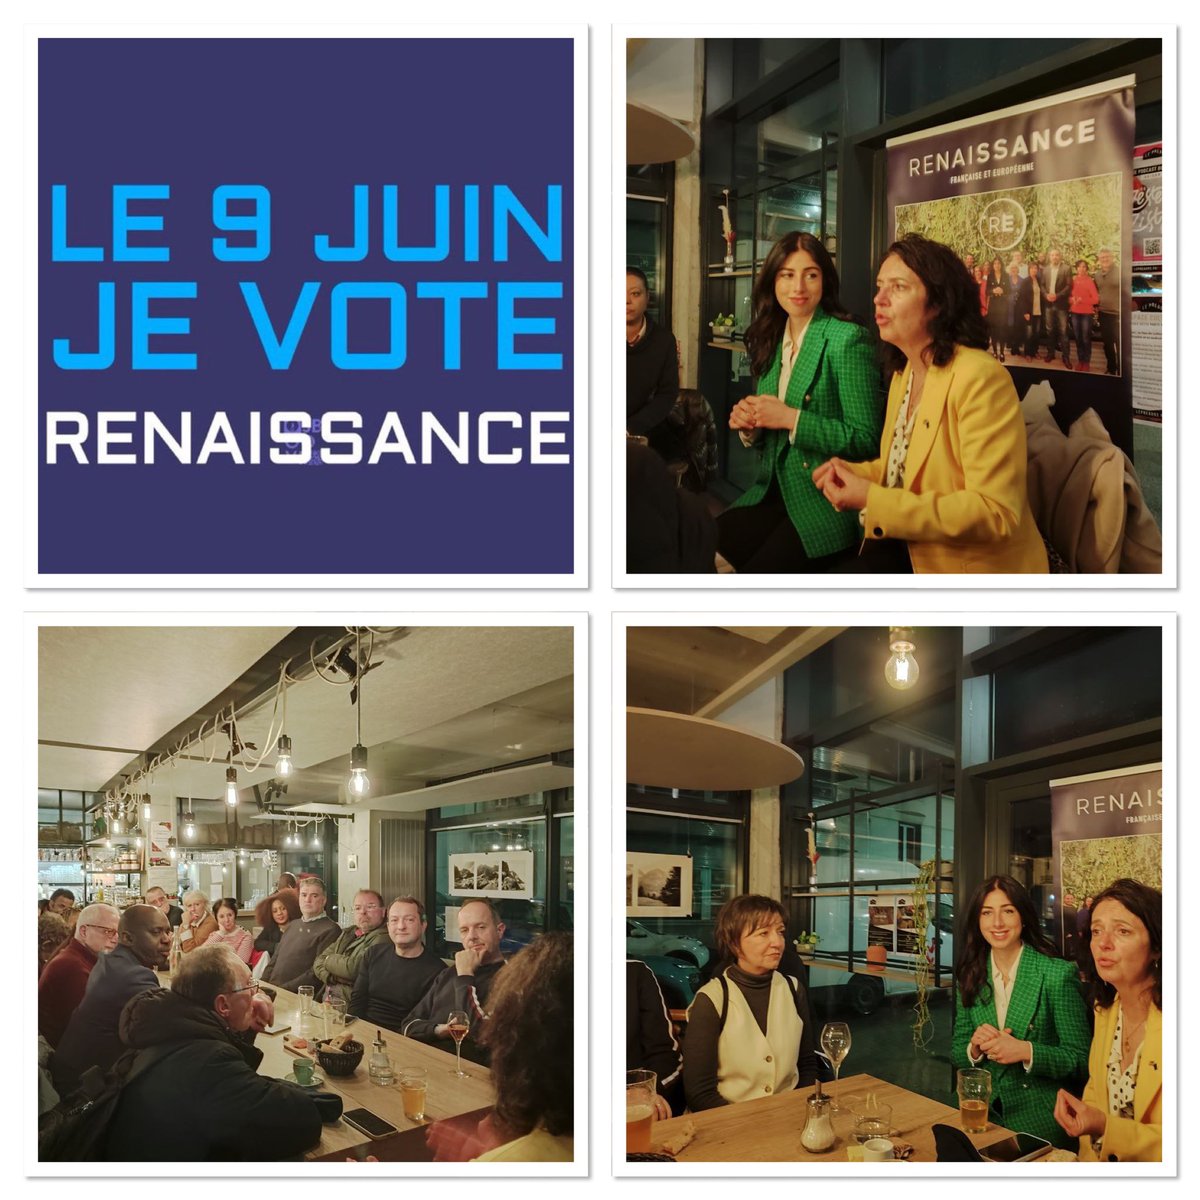 #Europe @Renaissance93 #UE Une soirée instructive dans une ambiance studieuse et amicale. Merci @ITolleret pour son intervention riche en enseignements pour une campagne #RenaissanceSSD et à @ShannonSeban pour permettre à notre équipe des rencontres déterminantes et motivantes.